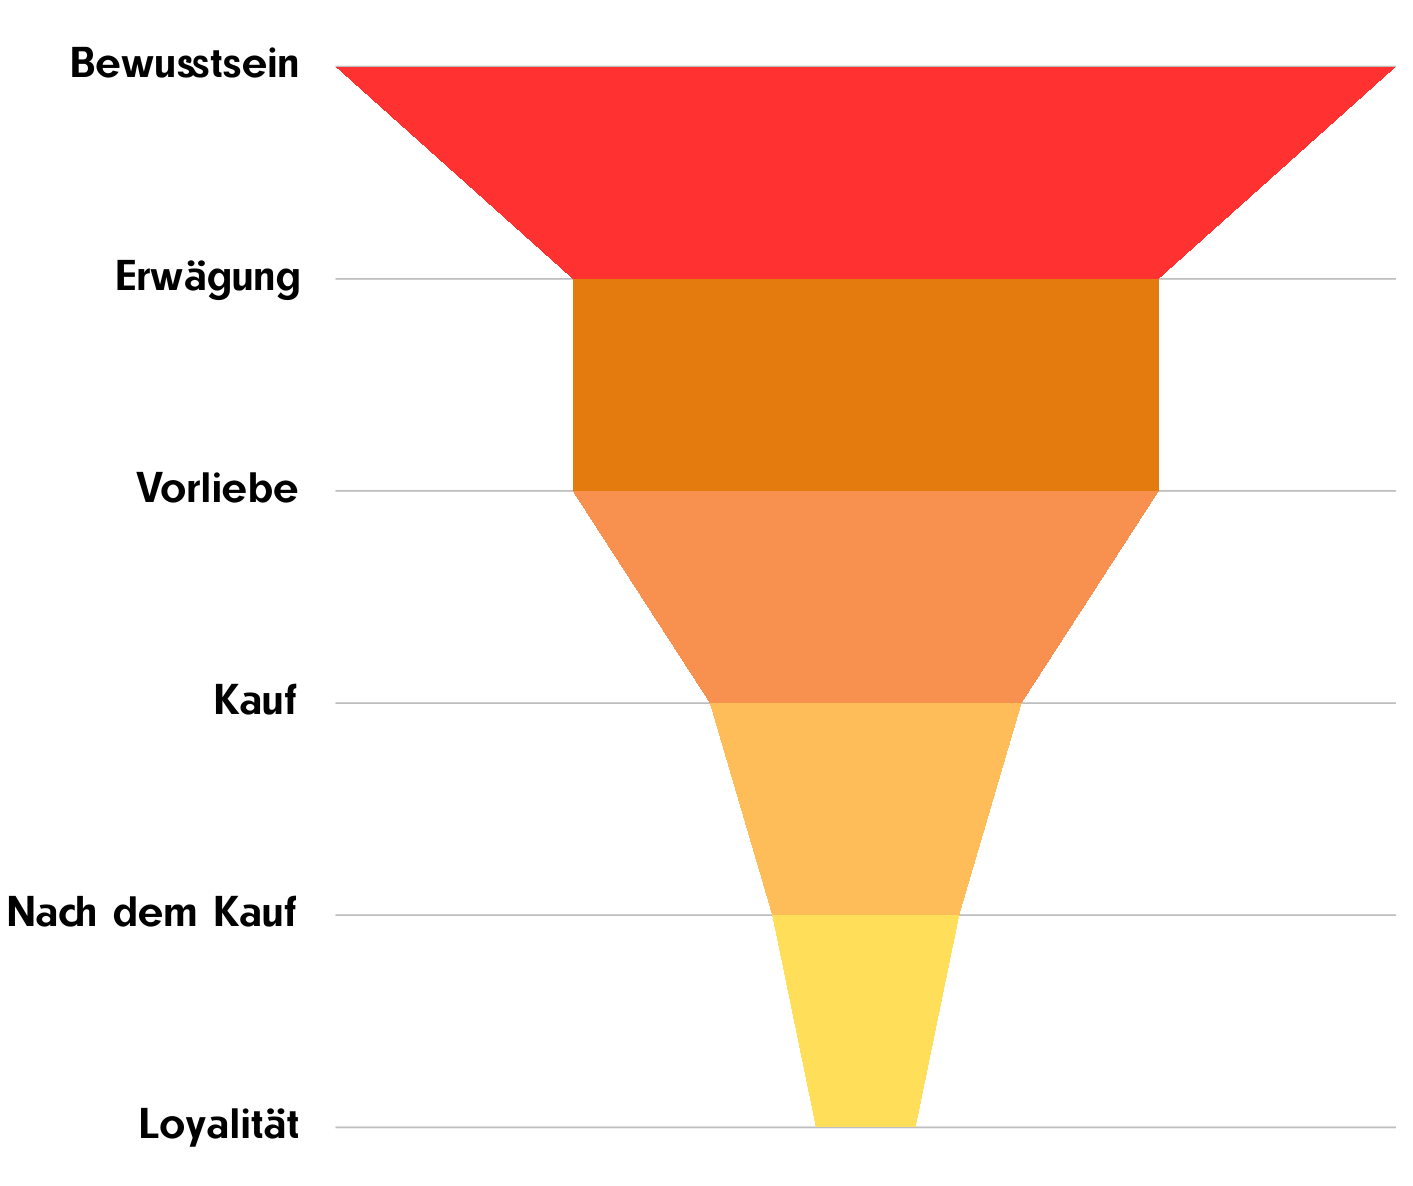 Eine Grafik die aus einem Trichter besteht, wo das Full-Funnel Marketing abgebildet wird.